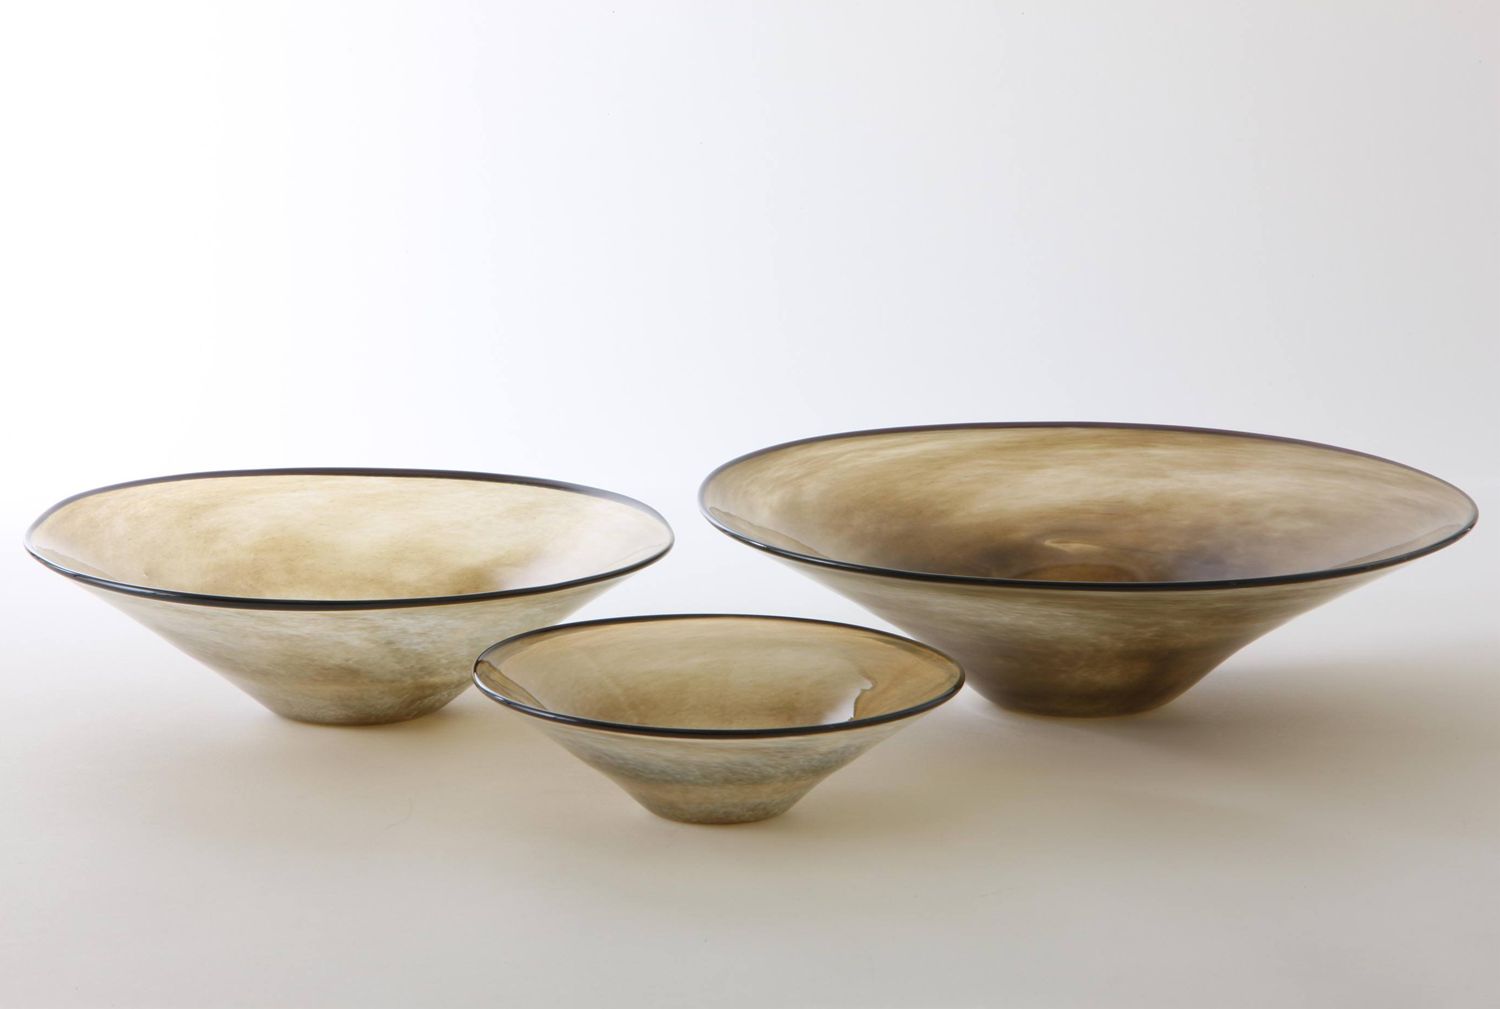 fresco/kasumi bowl M